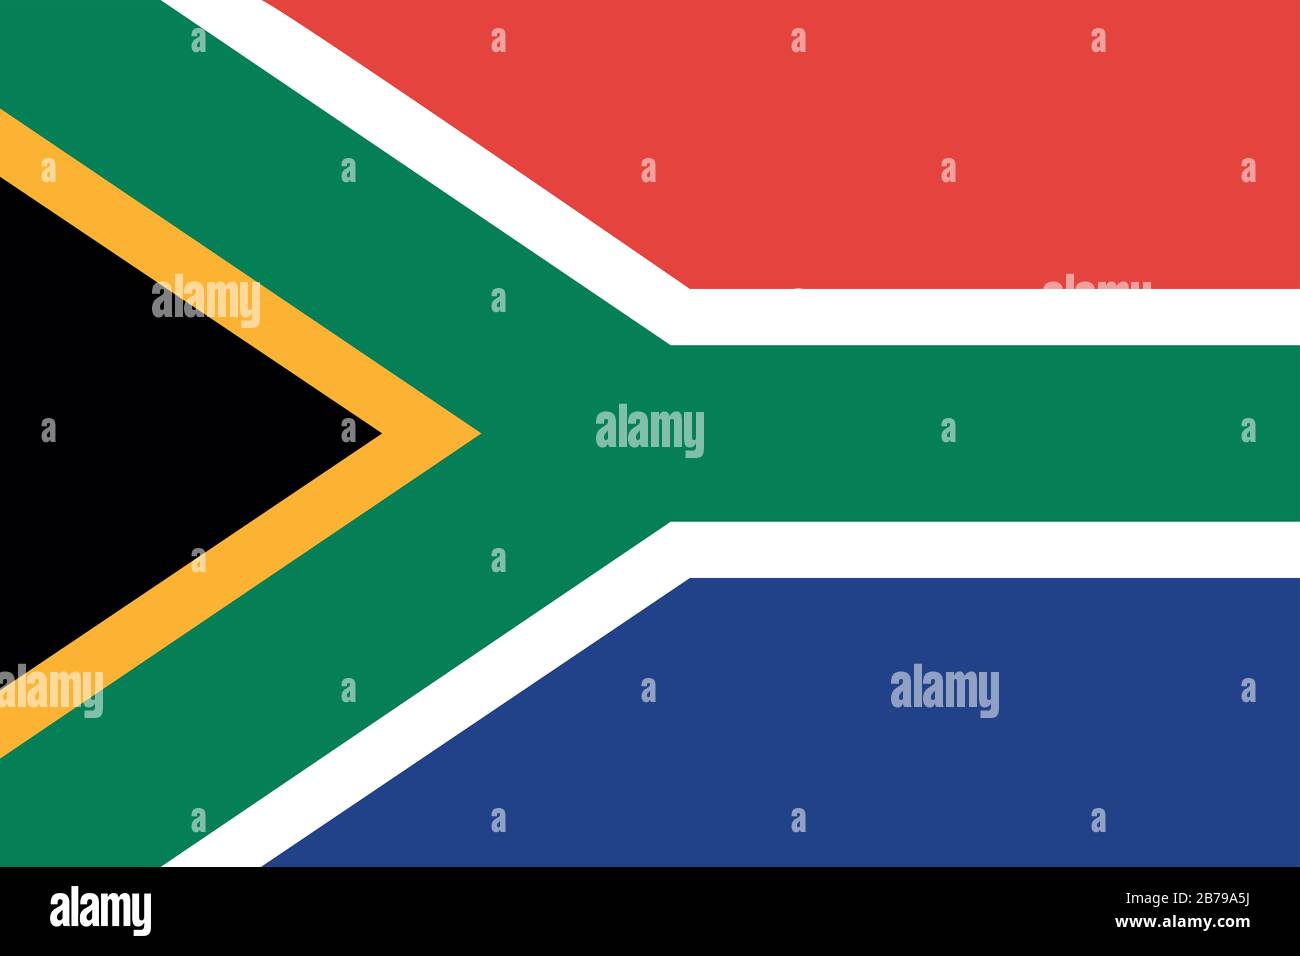 Flagge Südafrikas - Standardverhältnis der südafrikanischen Flagge - True RGB-Farbmodus Stockfoto